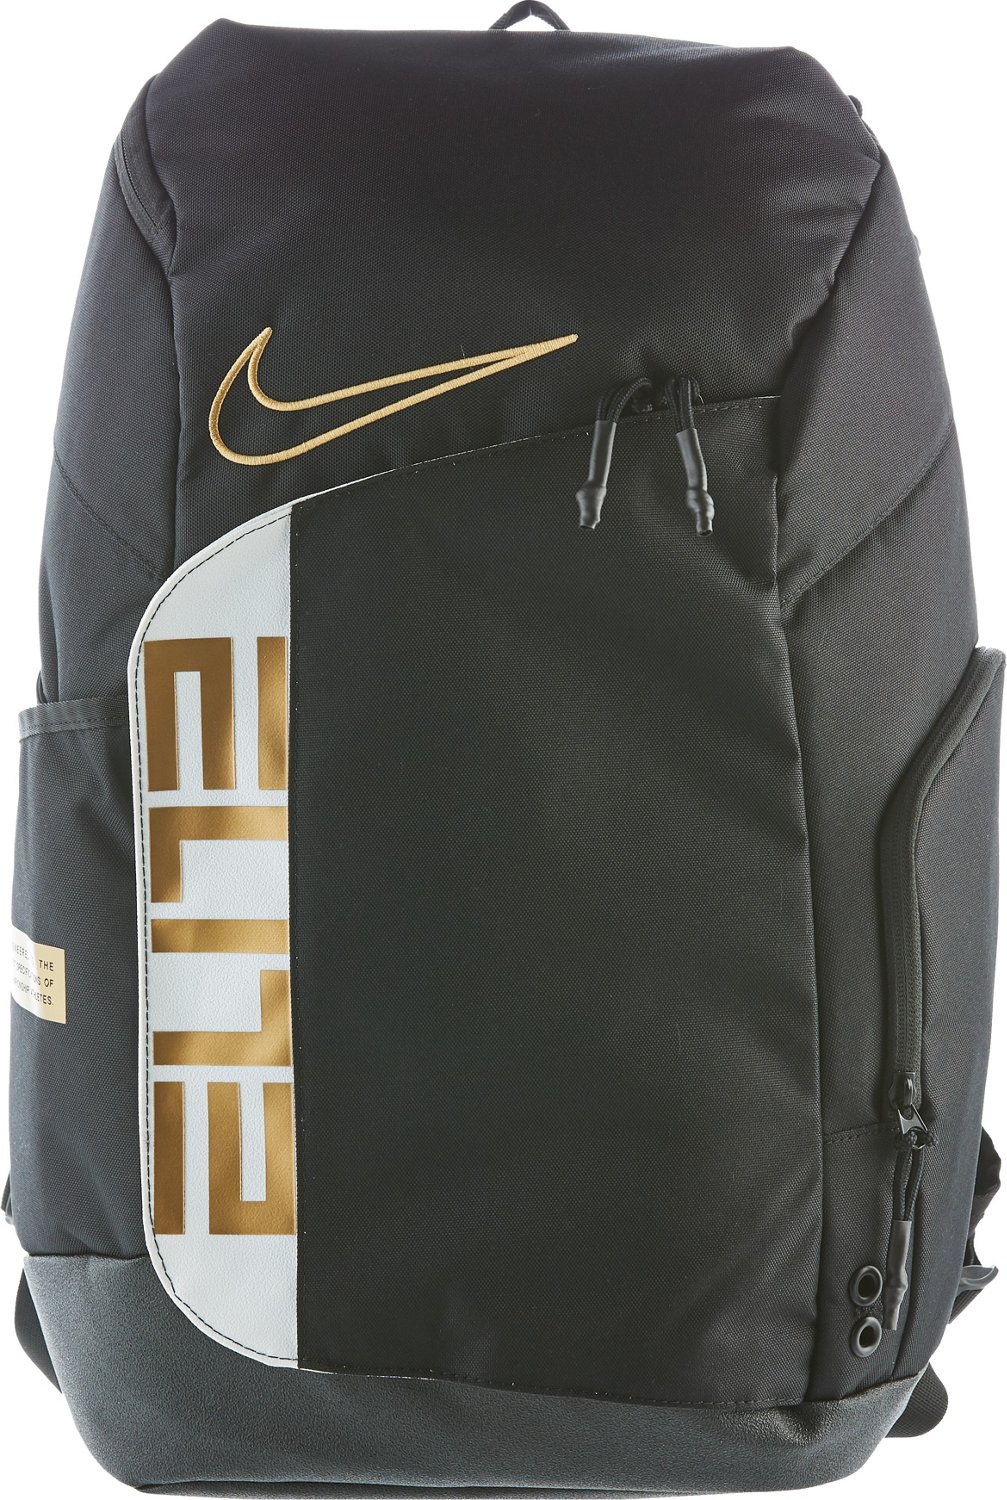 Nike Elite Pro Basketball Backpack | Academy